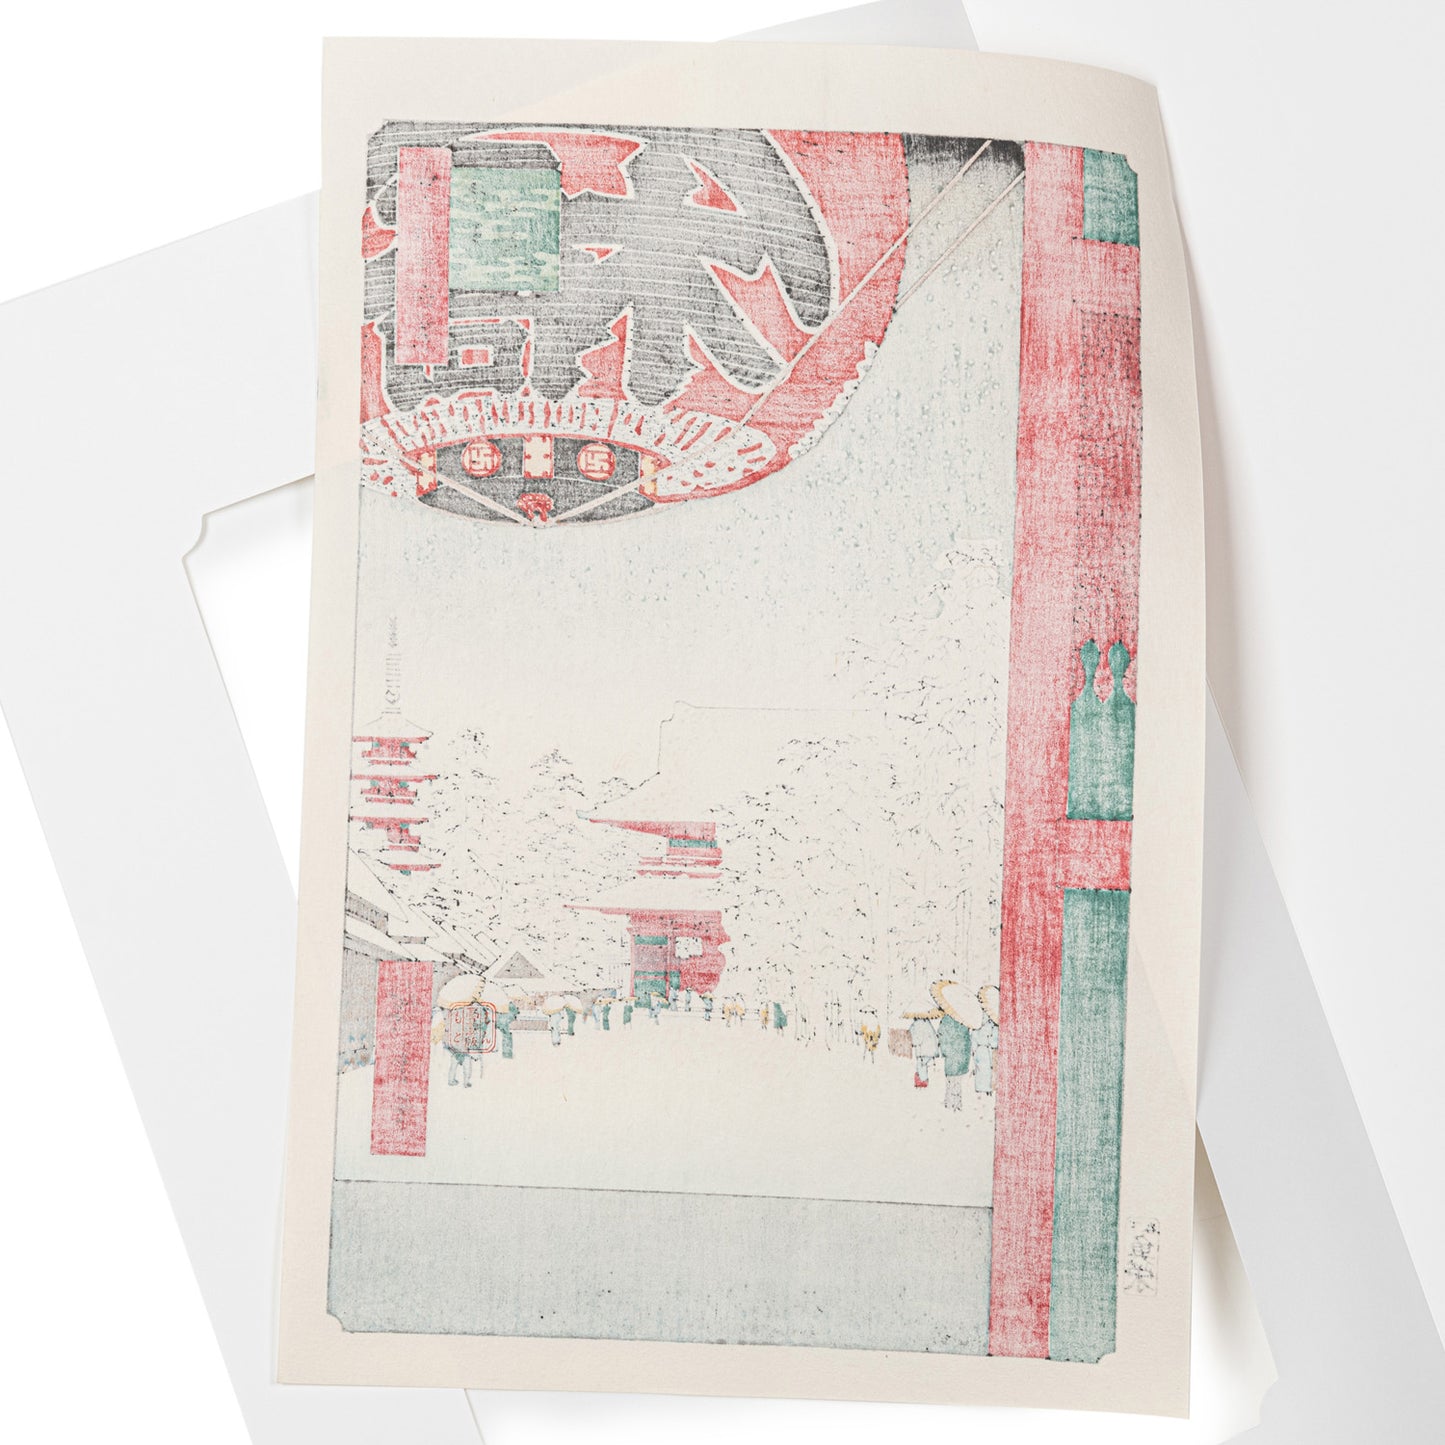 Framed Kinryuzan Sensoji Temple Woodblock Print